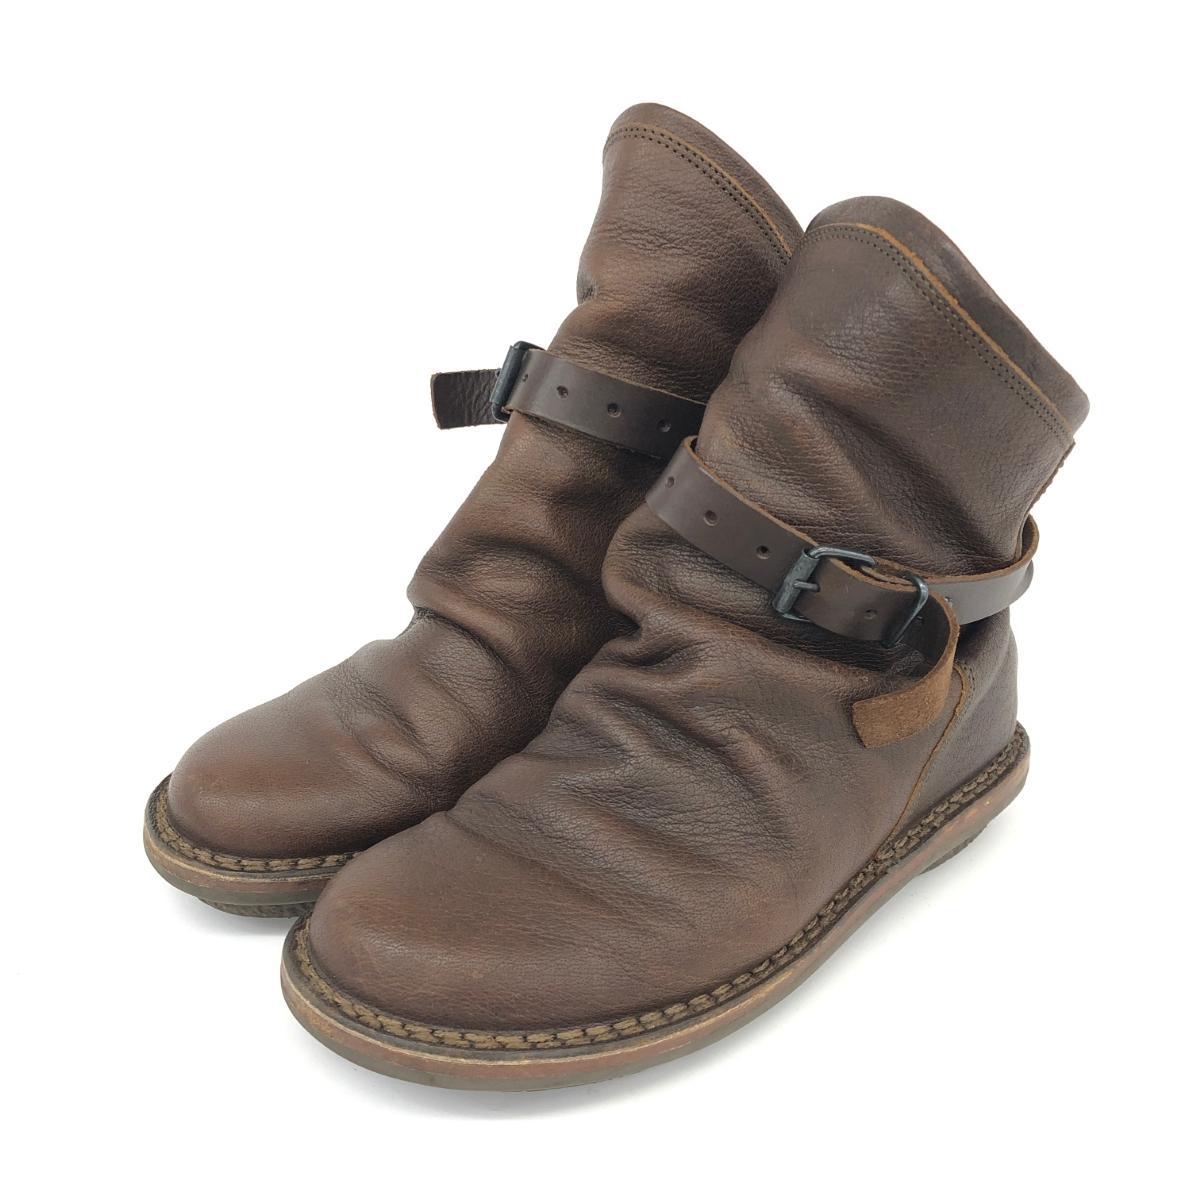 ◆trippen トリッペン エンジニアブーツ 36◆ ブラウン レザー レディース 靴 シューズ ブーティー boots